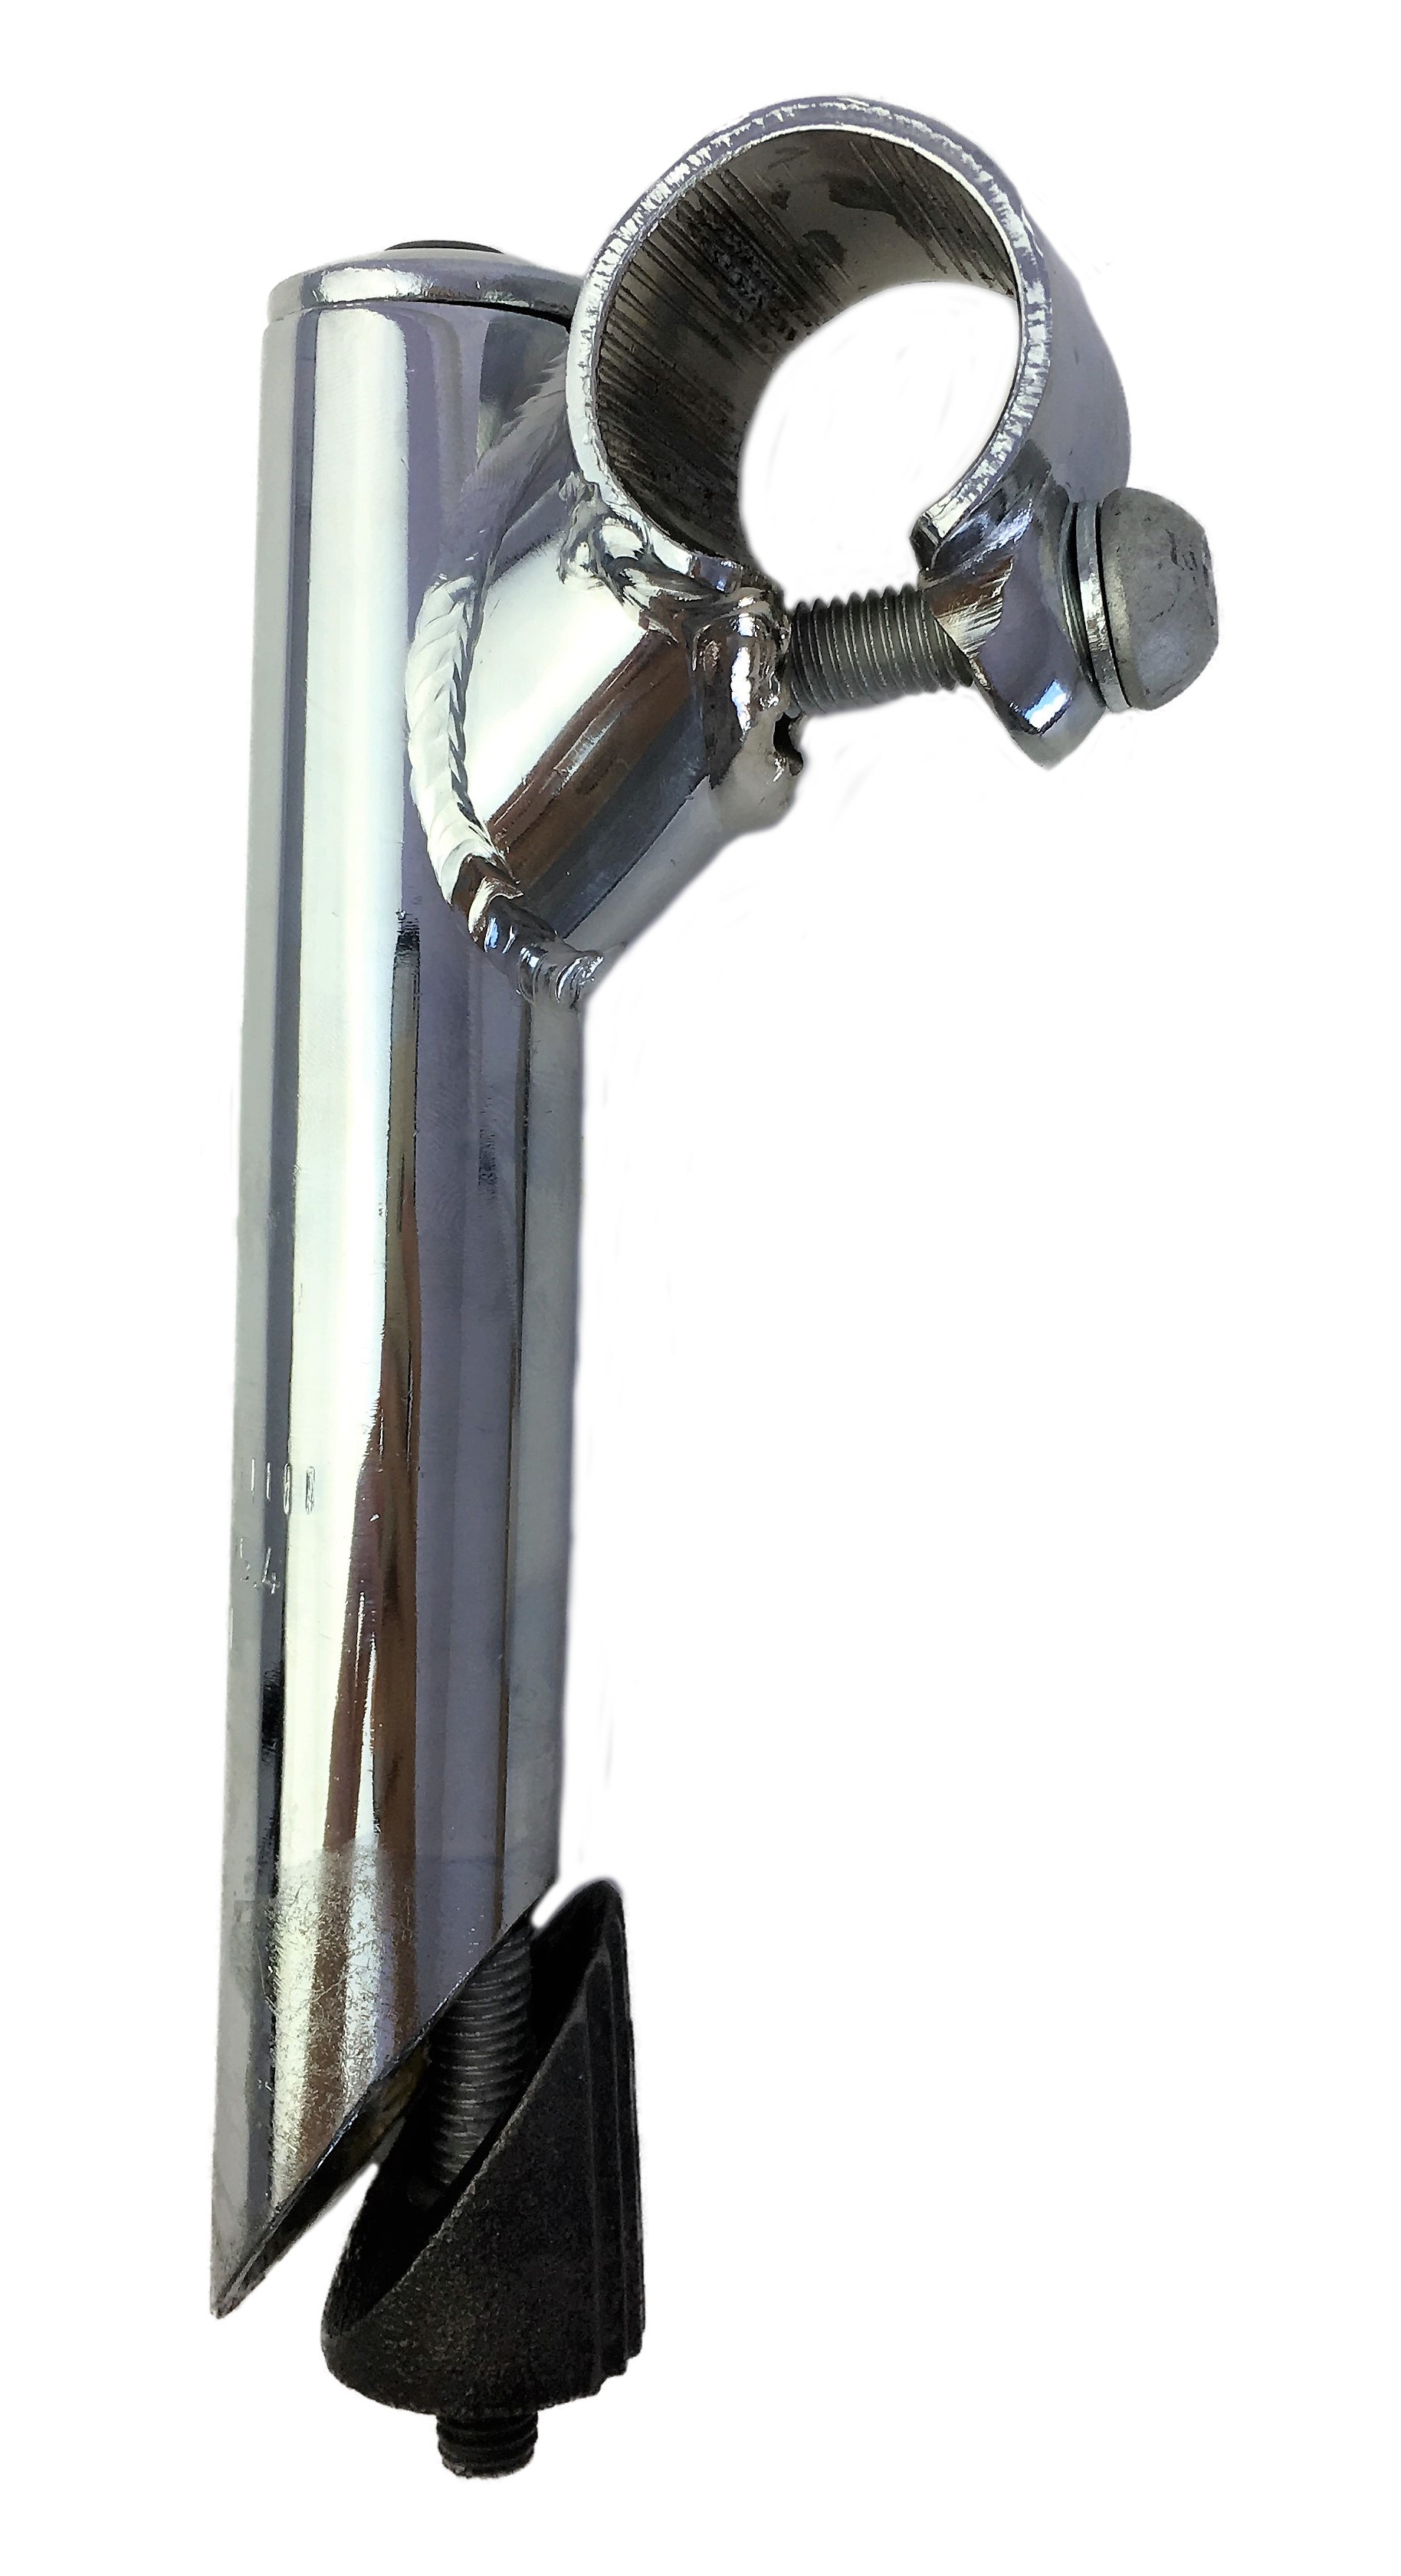 Tija del manillar 25,4 - 25,4, eje de acero con sujeción mediante 1 tornillo cromada Humpert Ergotec CV 101